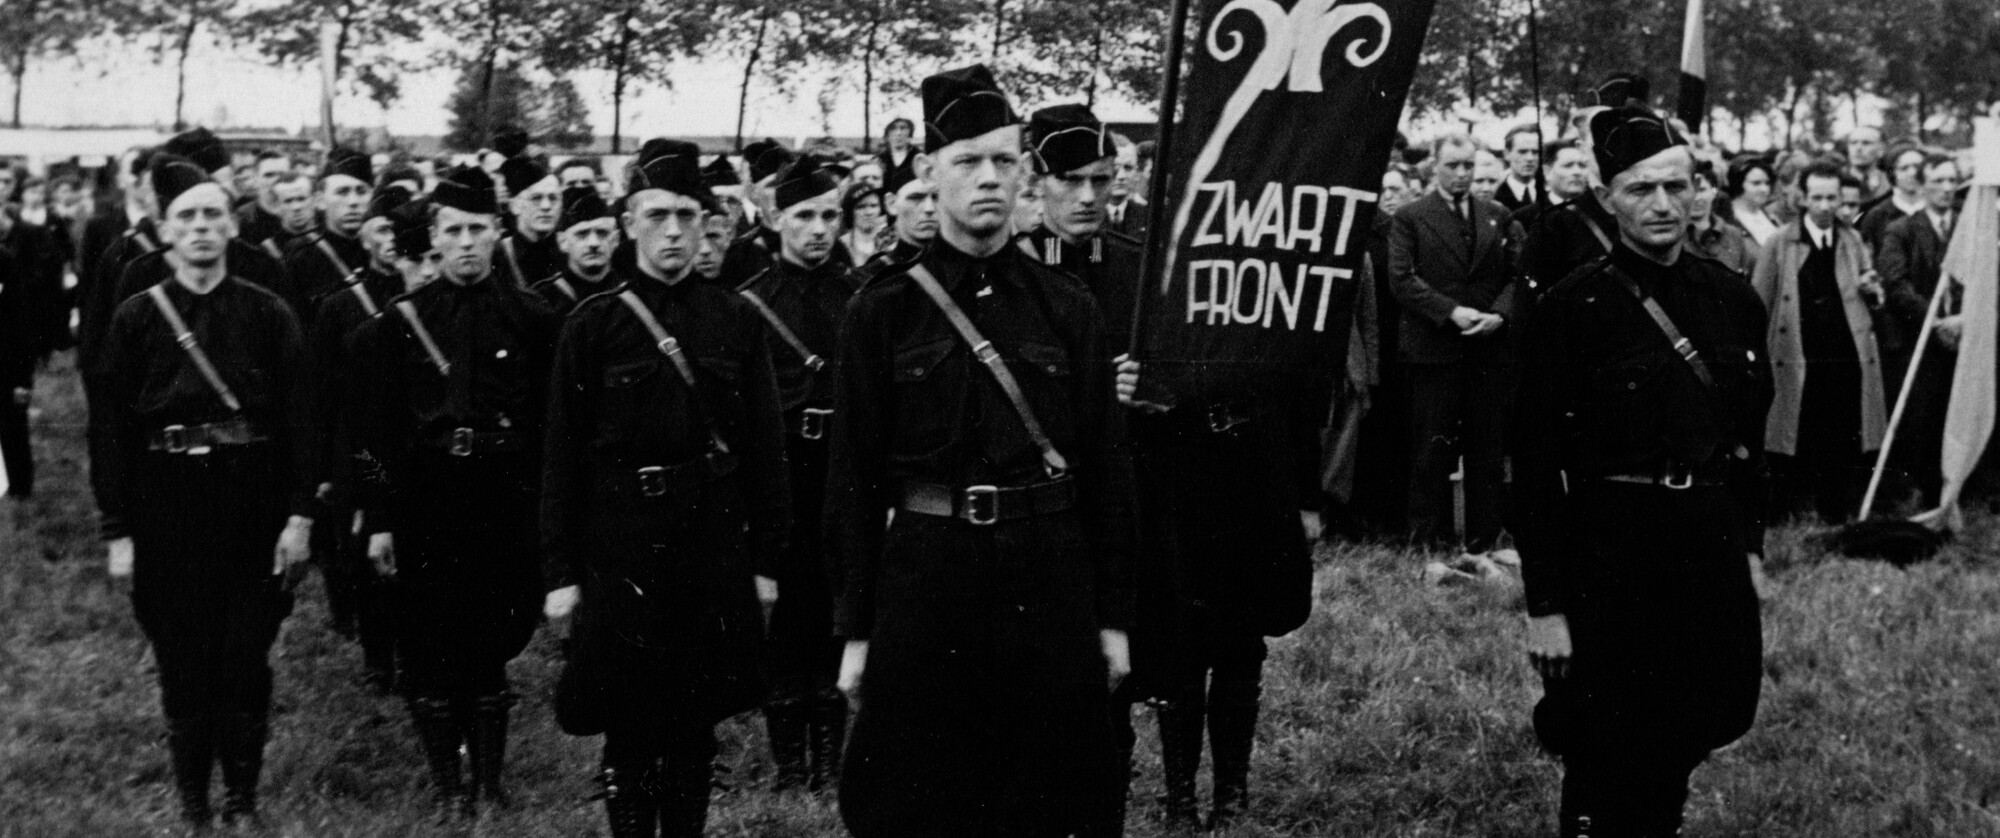 #525 - Het Nederlands fascisme in de film 'Allen tegen allen'